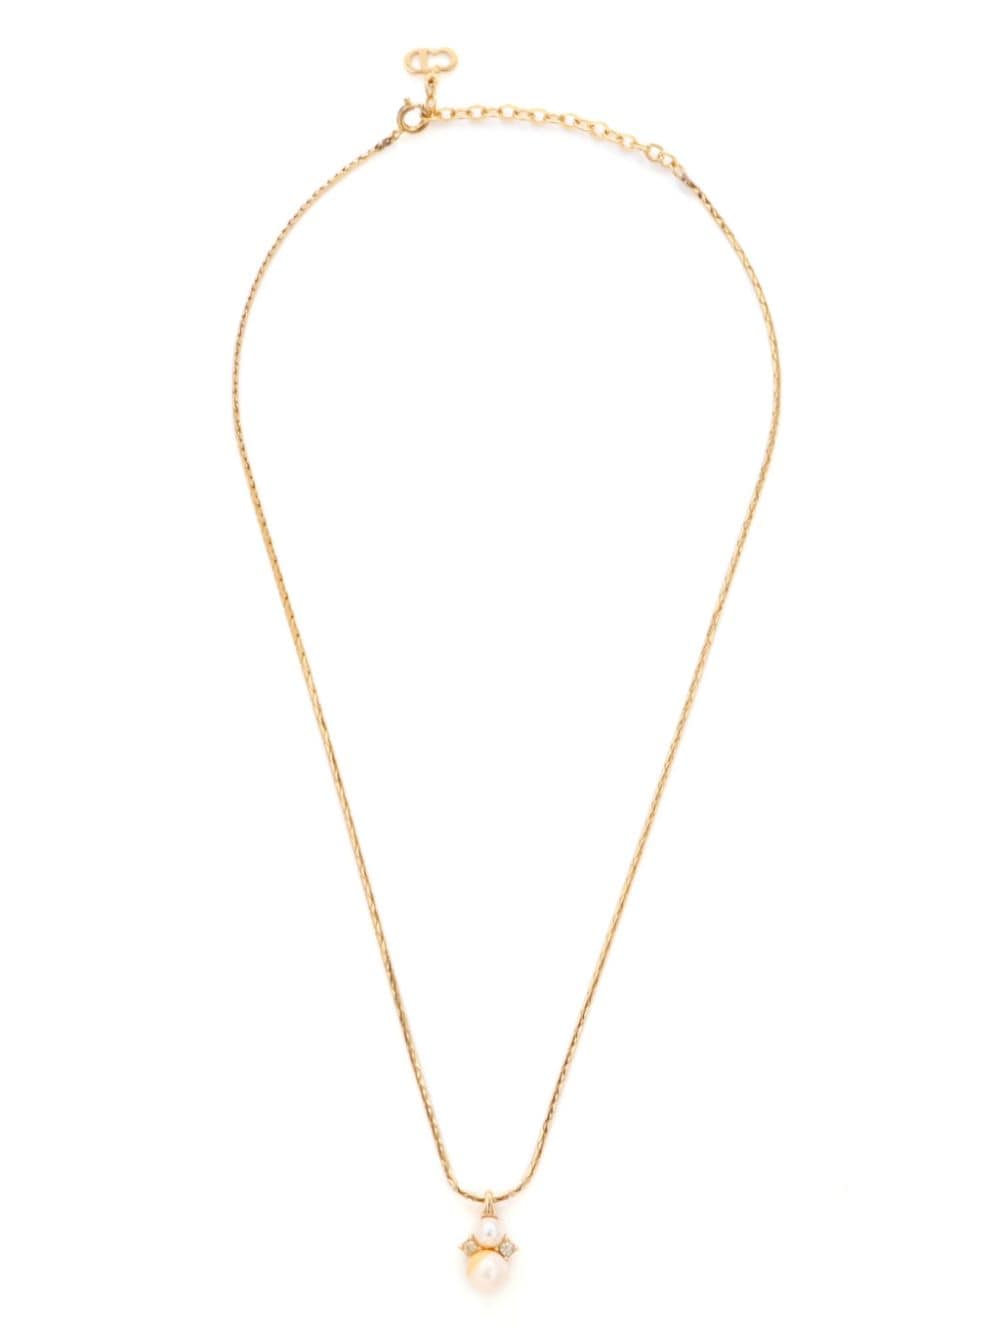 Christian Dior Pre-Owned Halskette mit Kunstperlen- und Strassanhänger - Gold von Christian Dior Pre-Owned